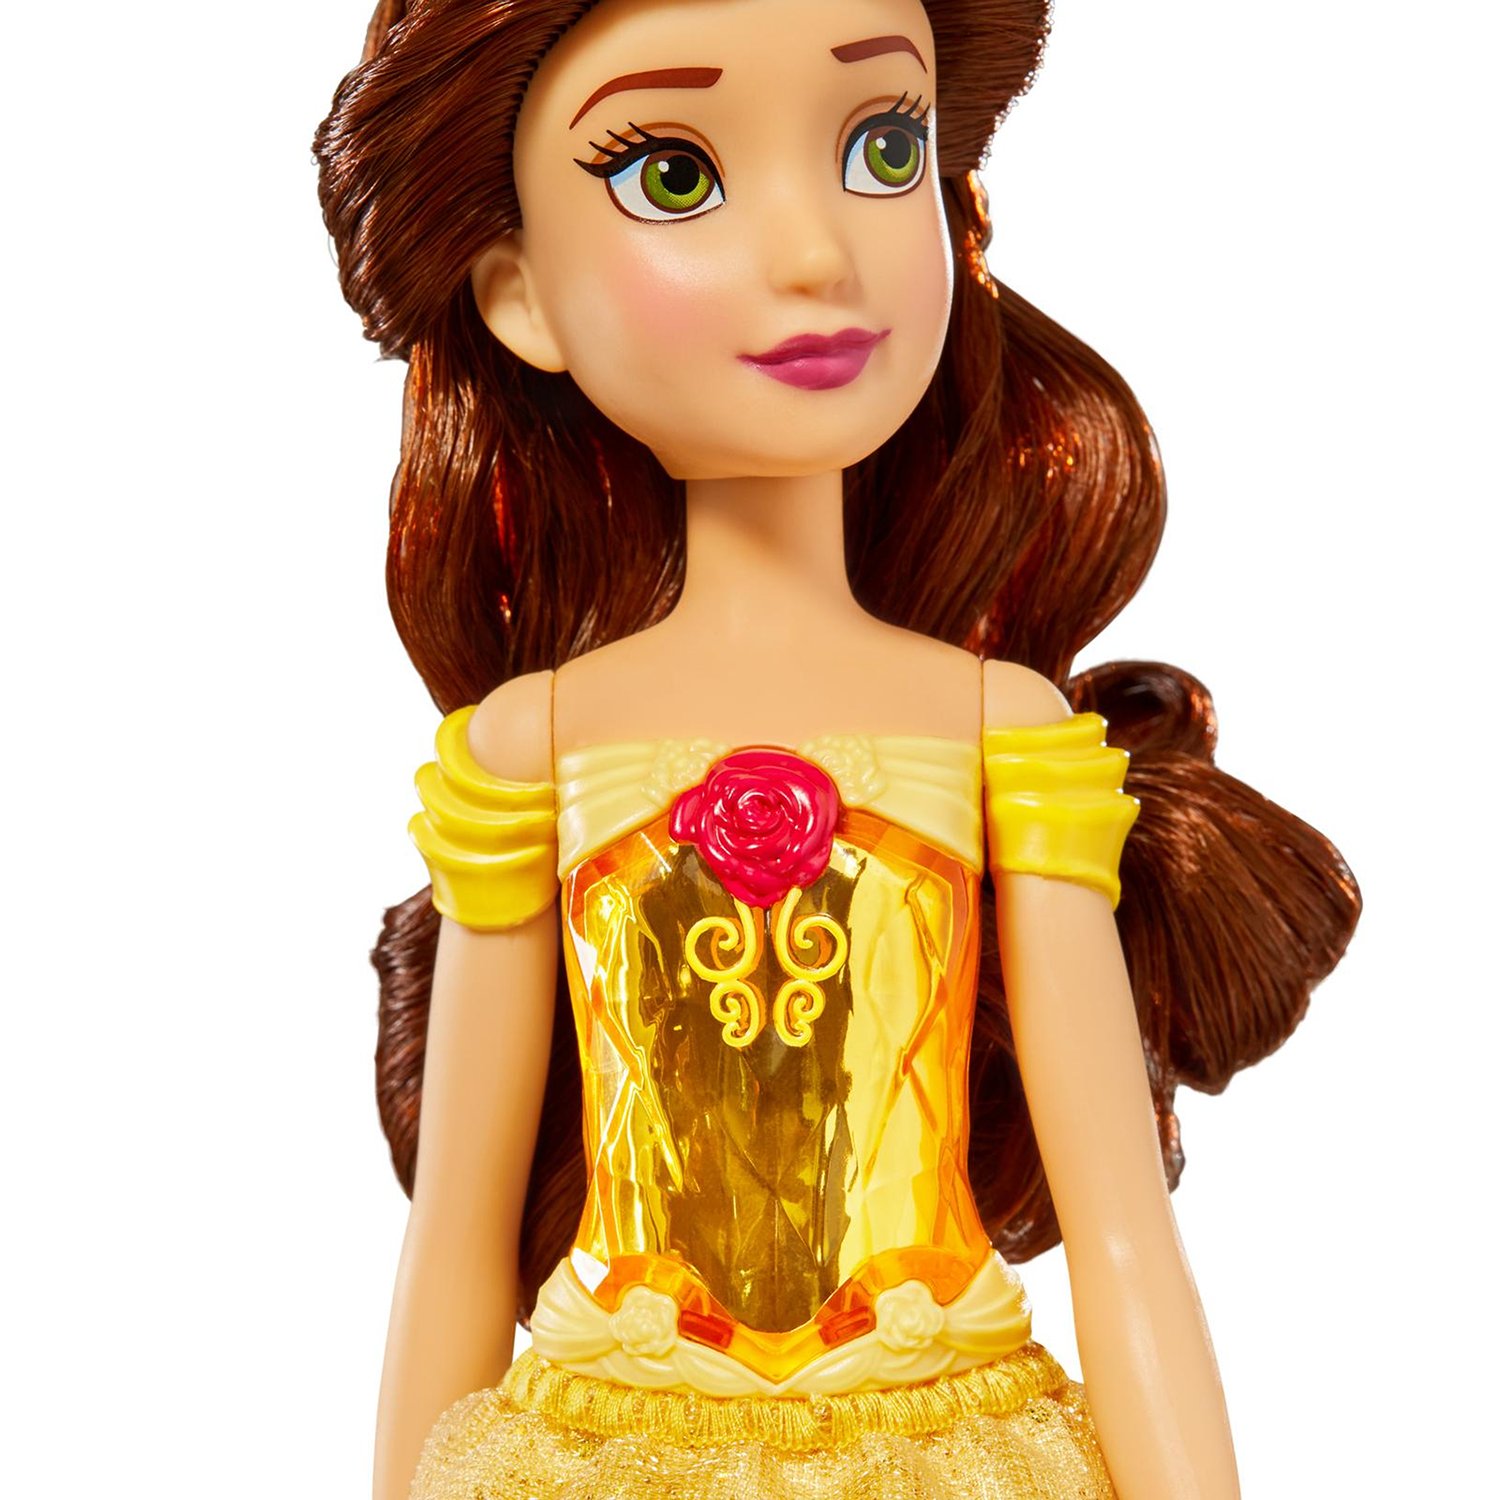 Кукла Disney Princess F0898 Белль 